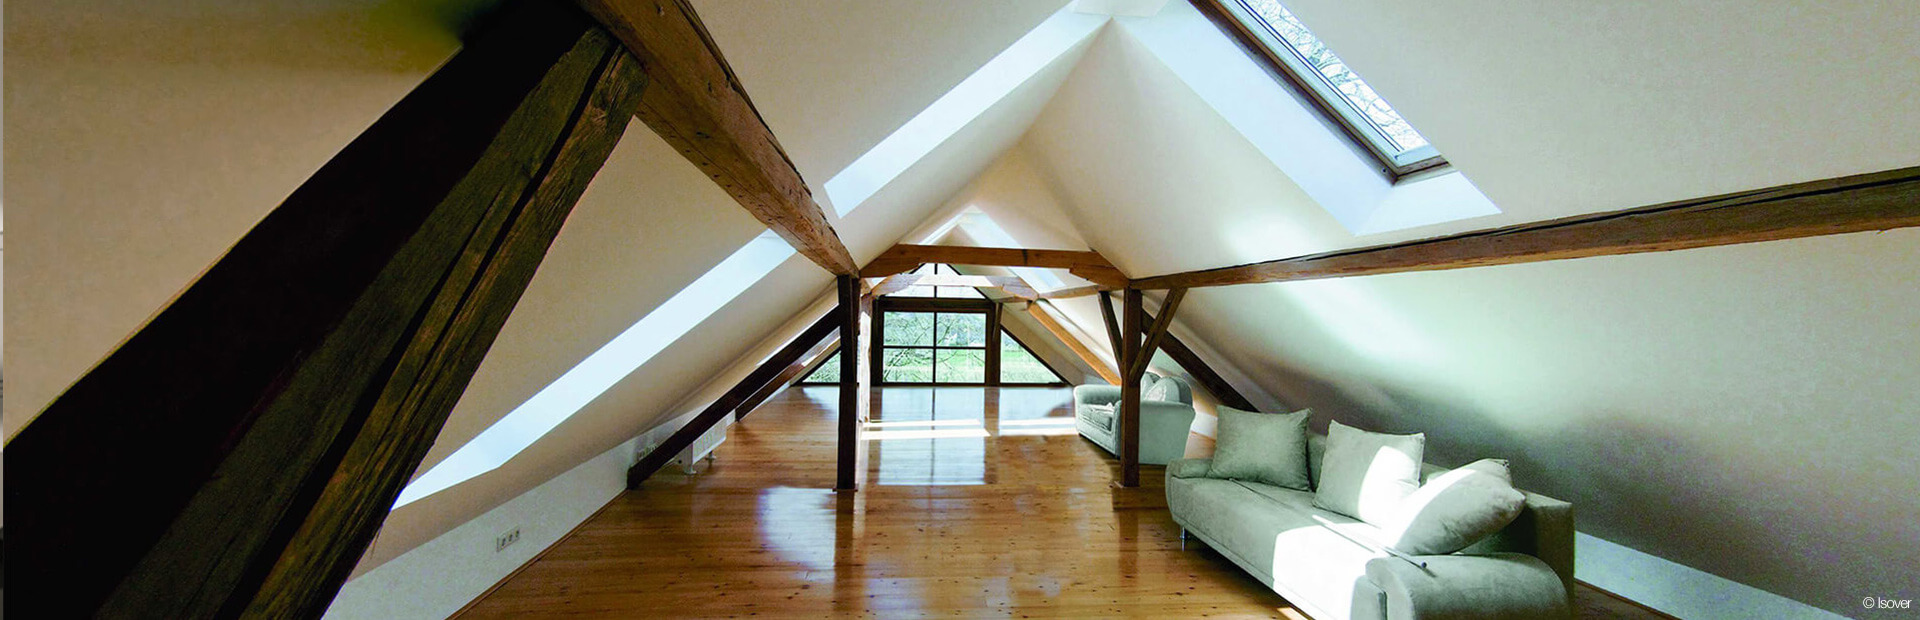 Ausgebauter Dachboden mit Dachfenster und Balken